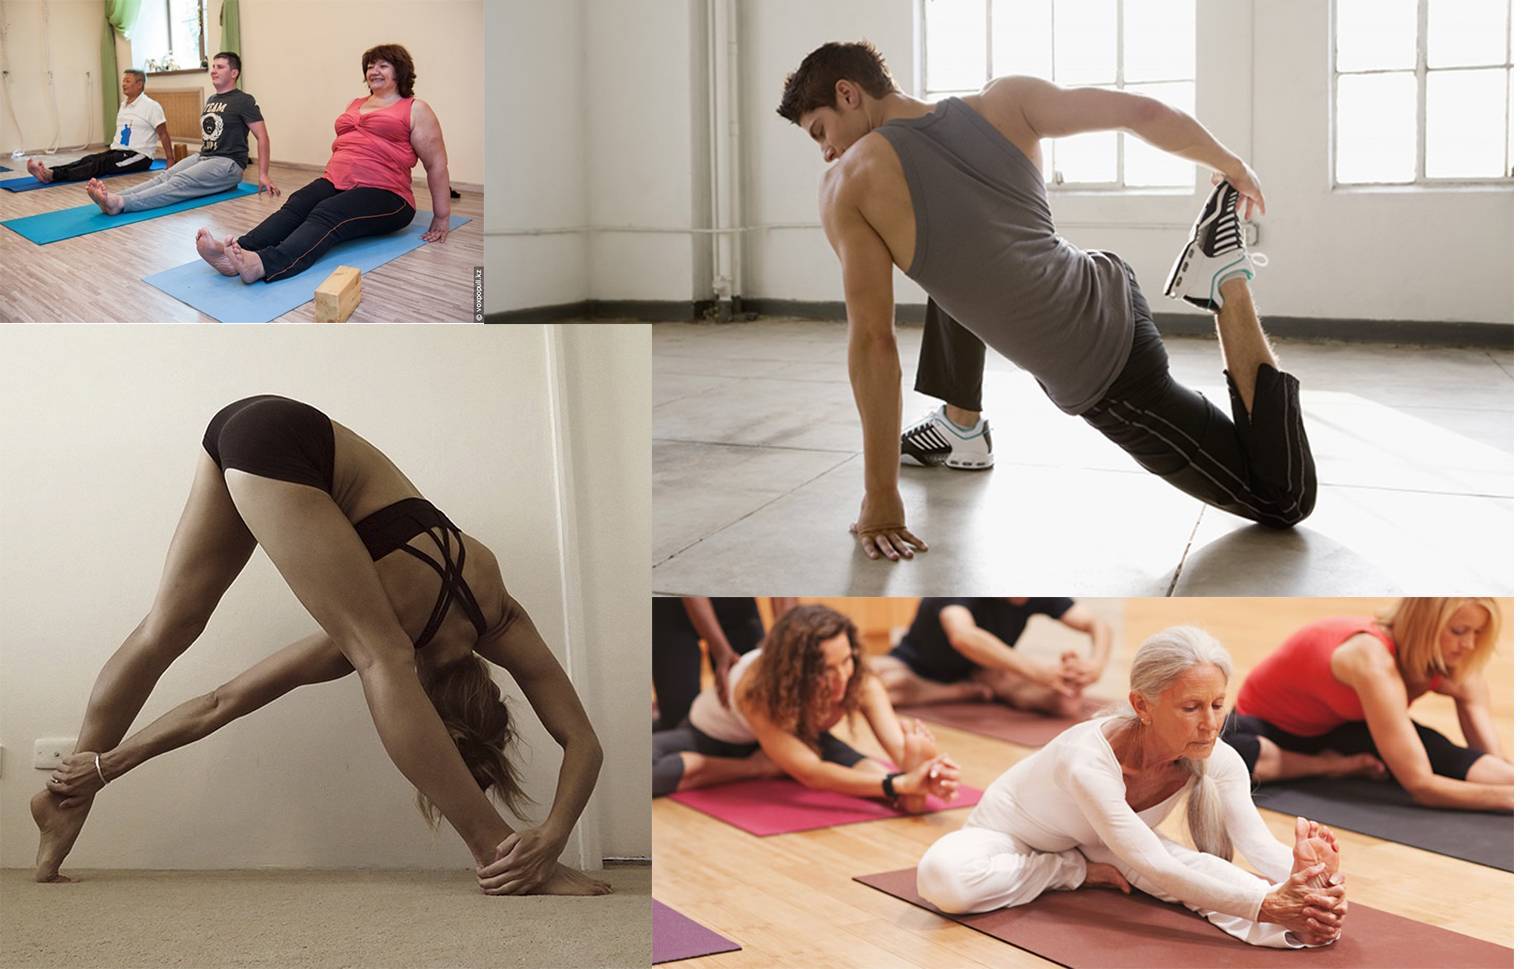 9 статических упражнений для ног, ягодиц и бедер: статодинамическая тренировка для похудения галифе, укрепления связок и развития силы мышц